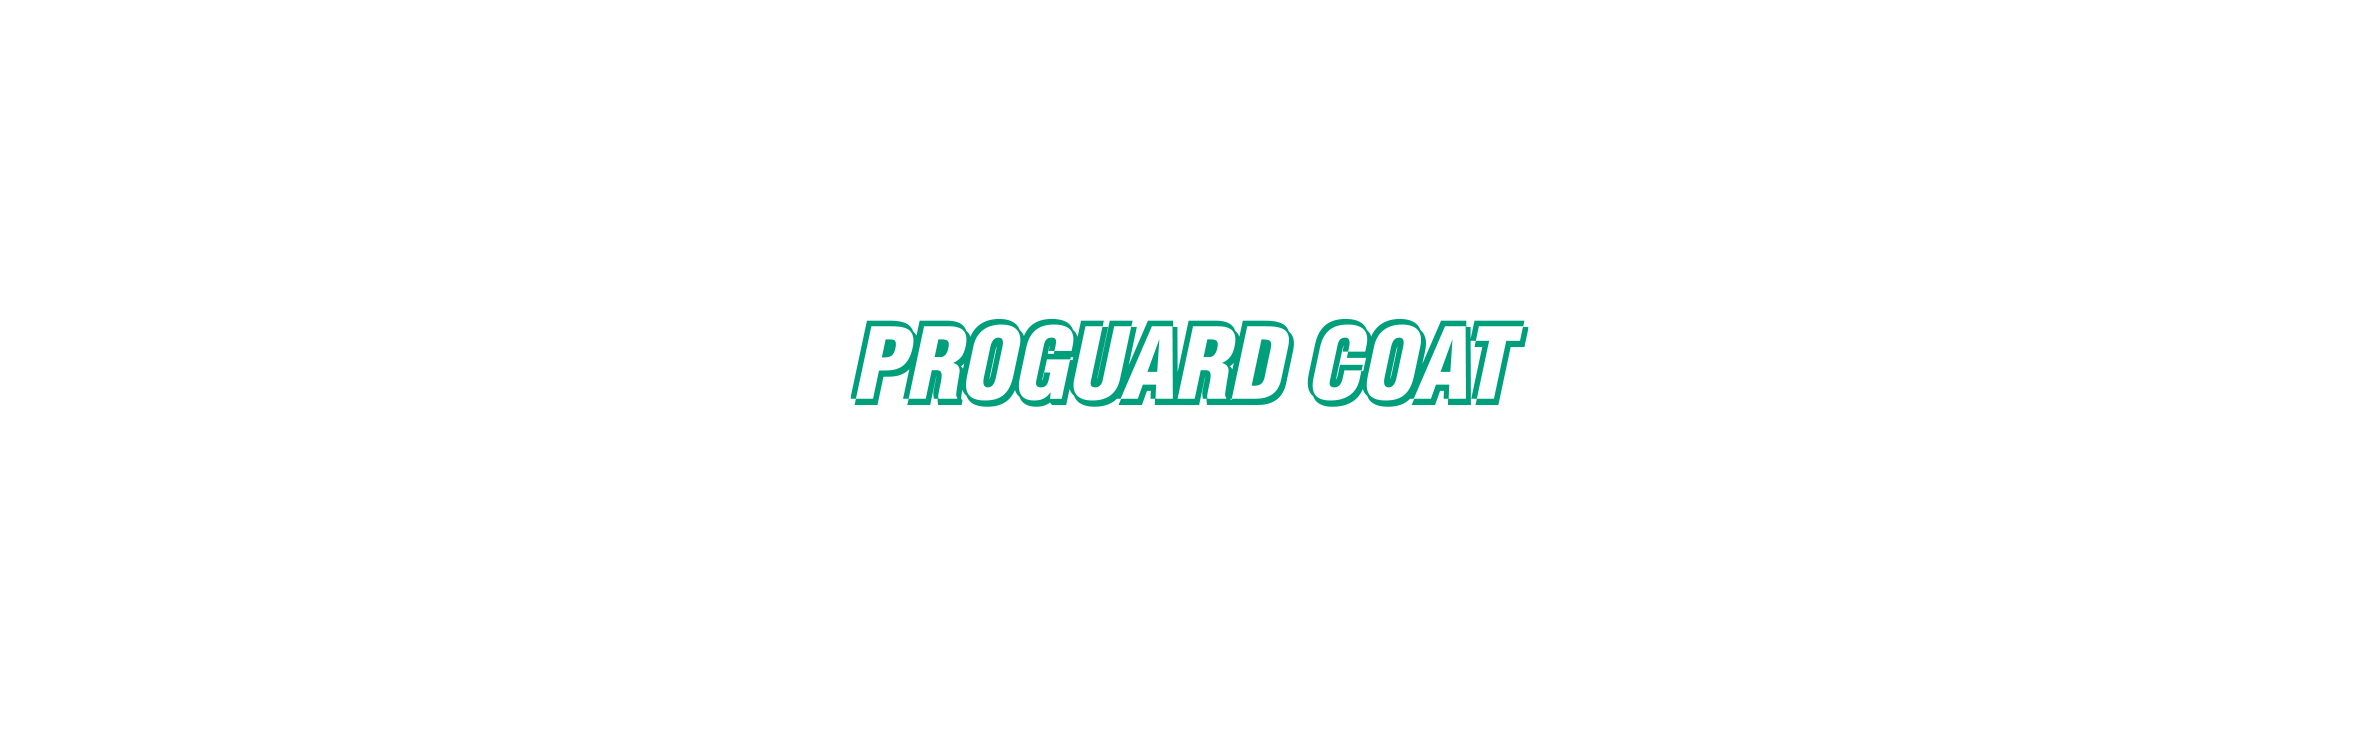 PROGUARD COAT